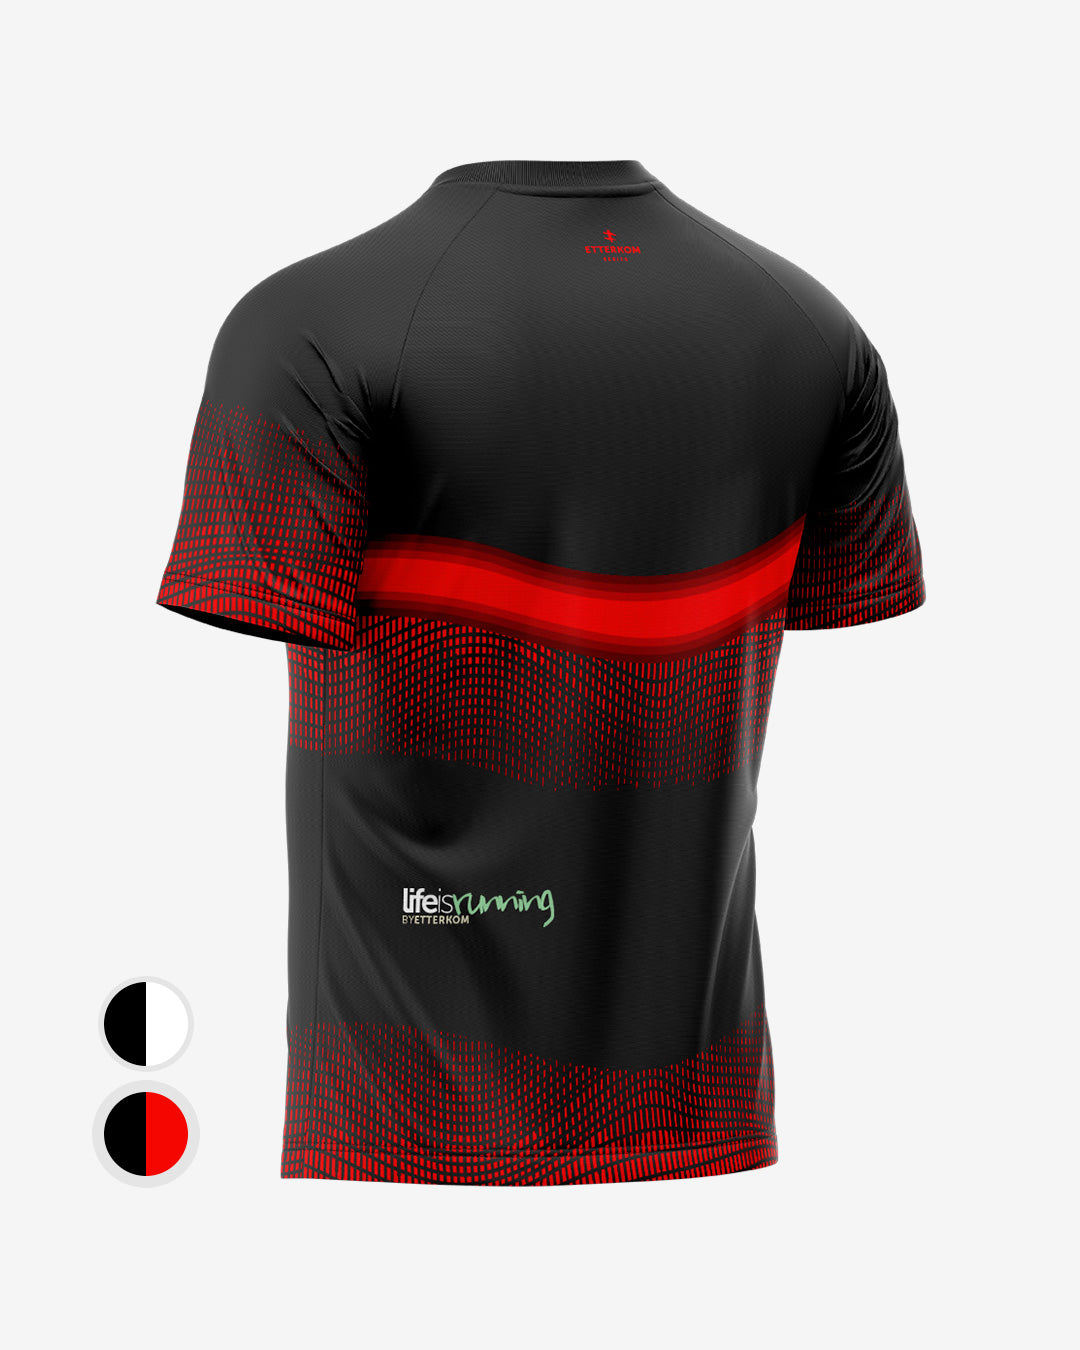 Camiseta running Carretero ET85 Black & Red